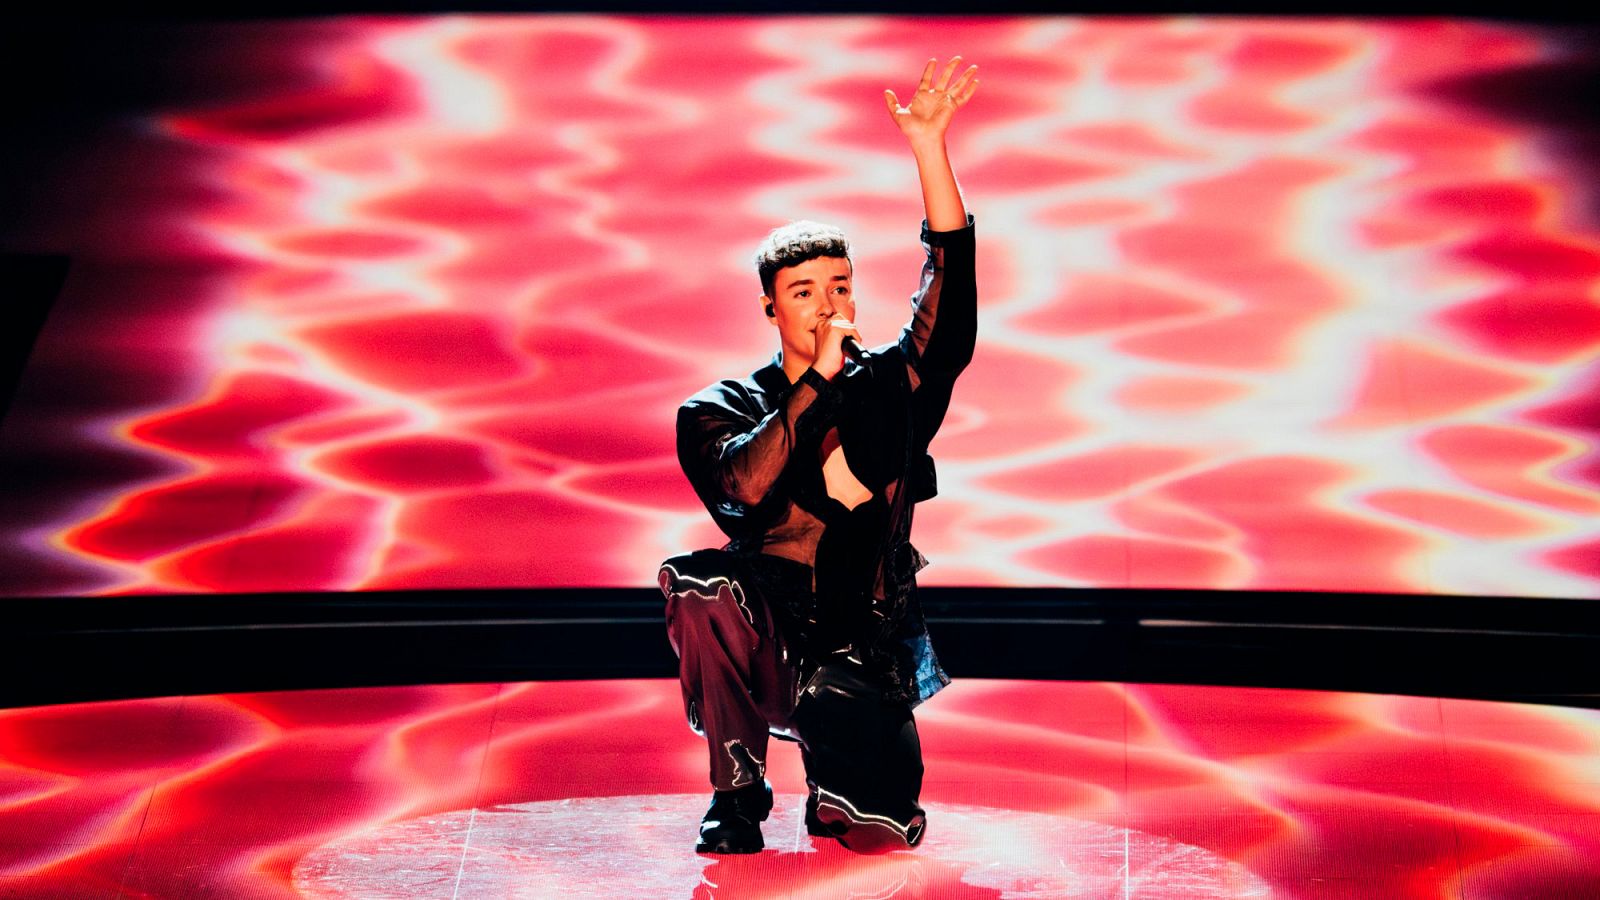 Suiza - Remo Forrer con "Watergun" en la Final | Eurovisión 2023